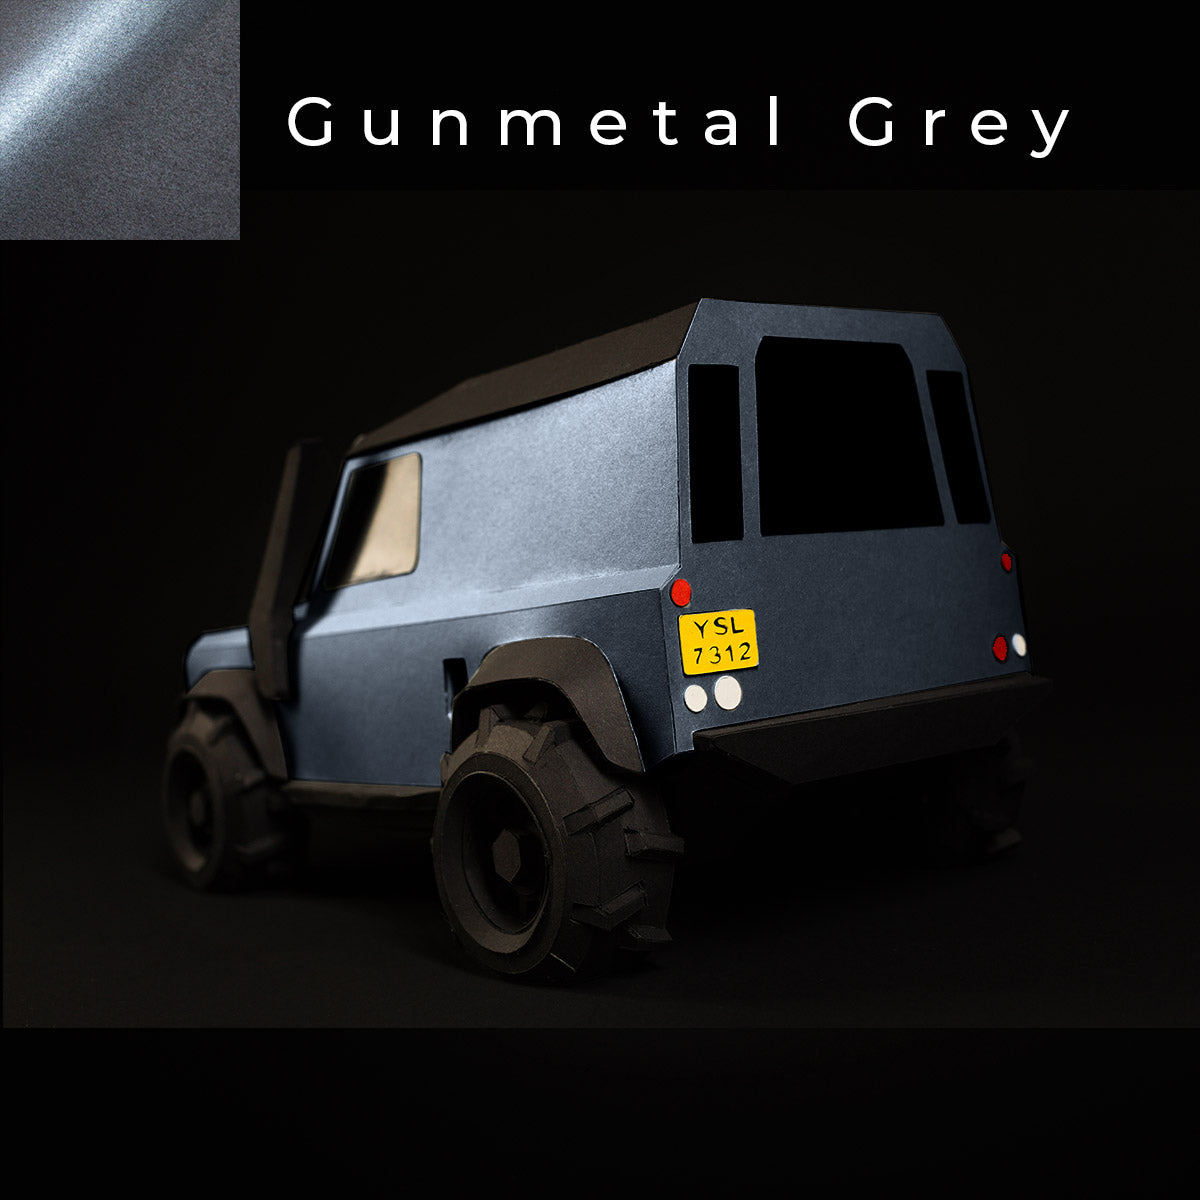  Offroad Papercraft Car Sculpture Kit - Geländewagen Verteidiger - Gunmetal Grey